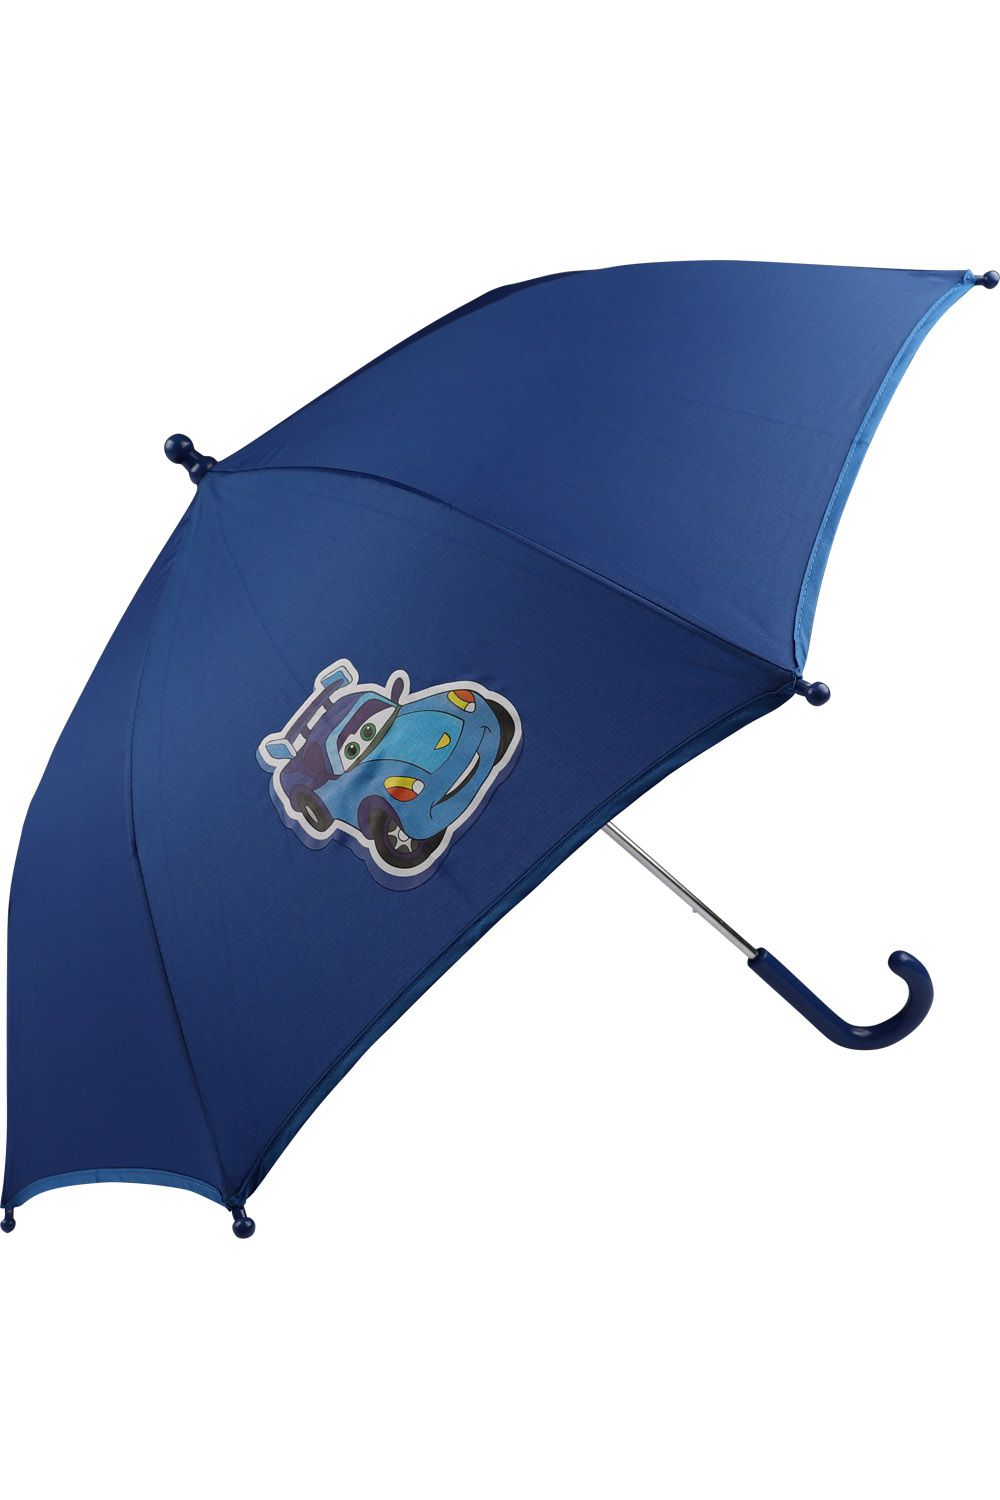 Зонт ArtRain, размер UNI, цвет синий 1552M - фото 1